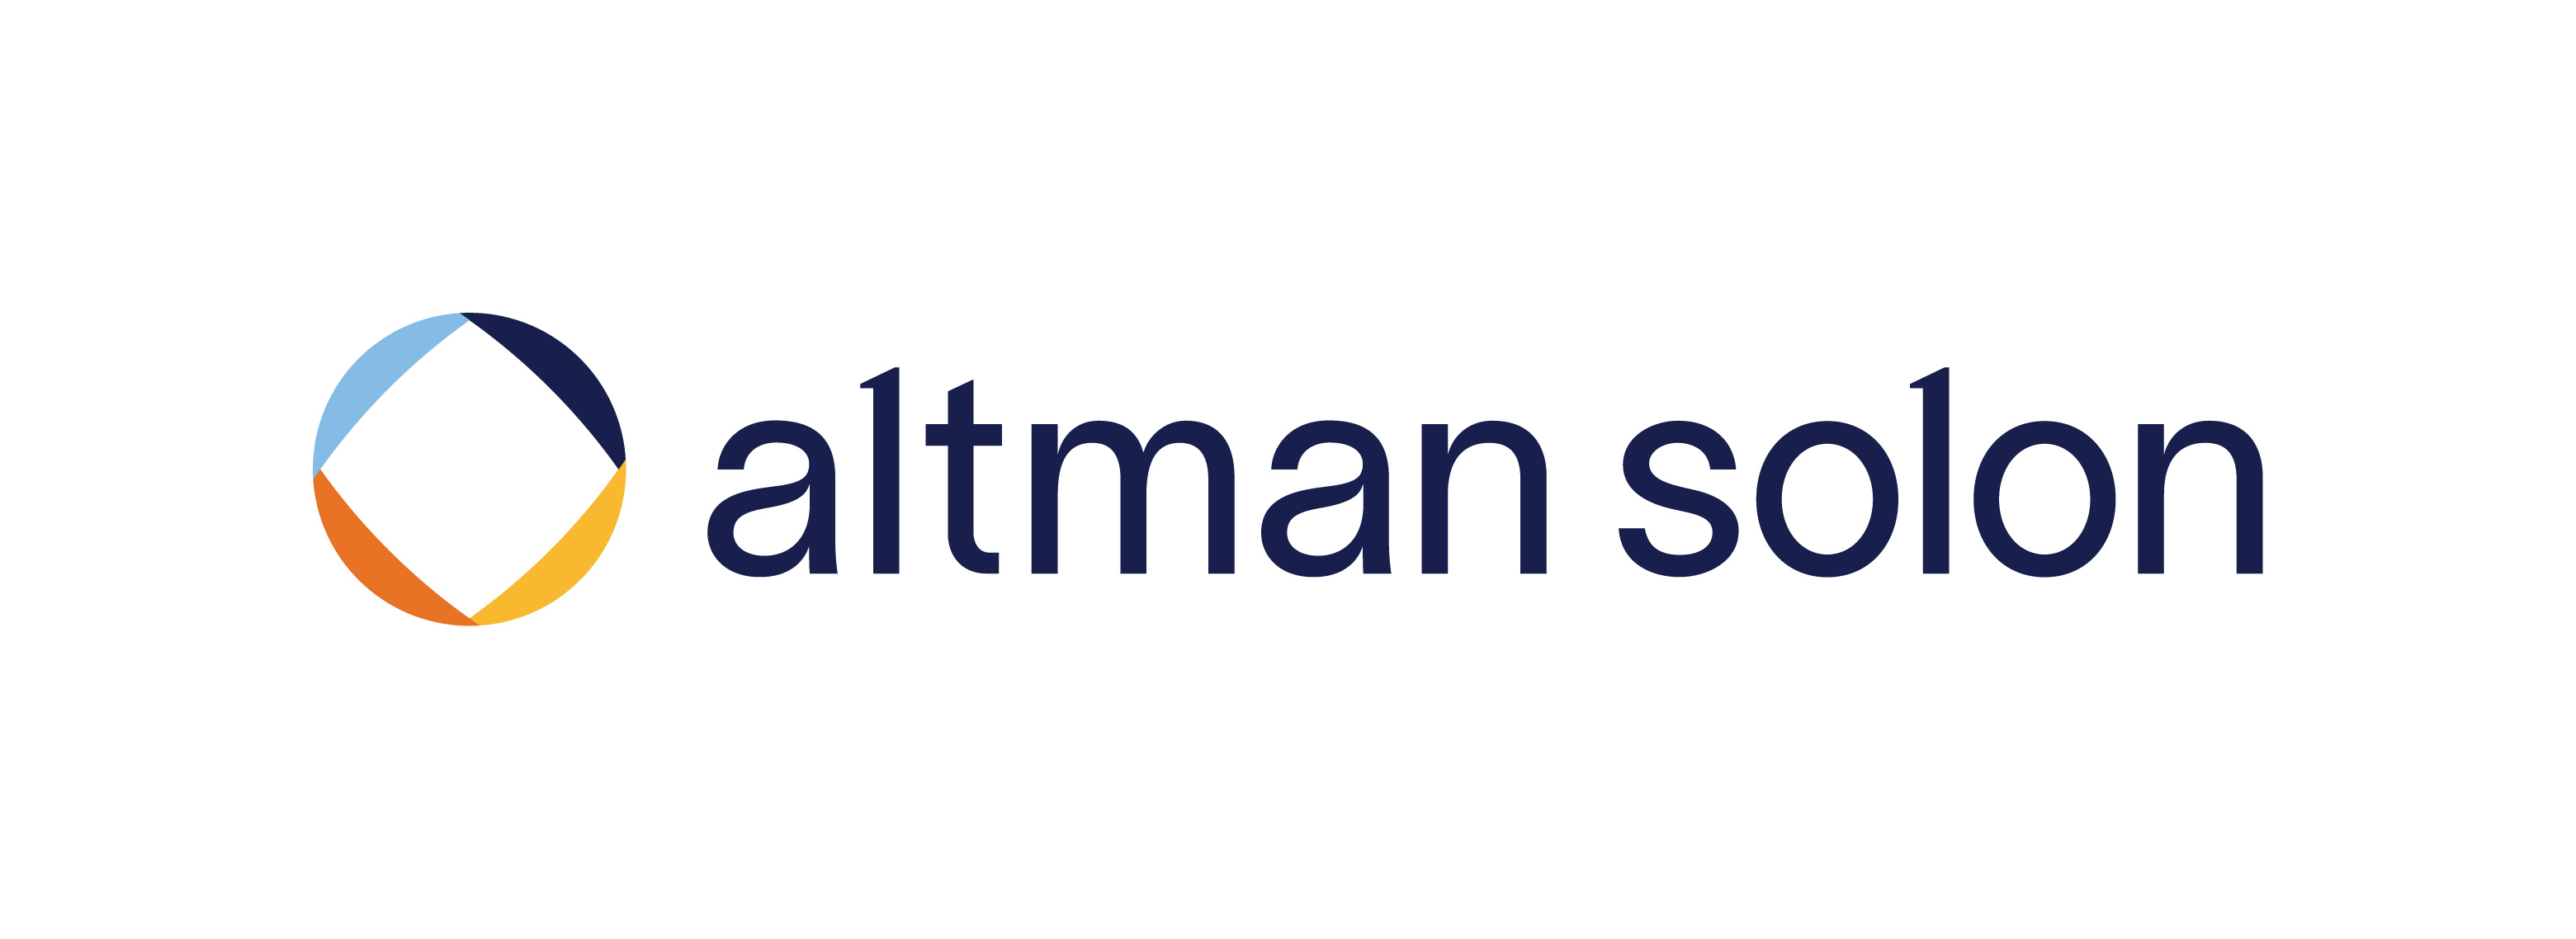 Altman Solon GmbH & Co. KG